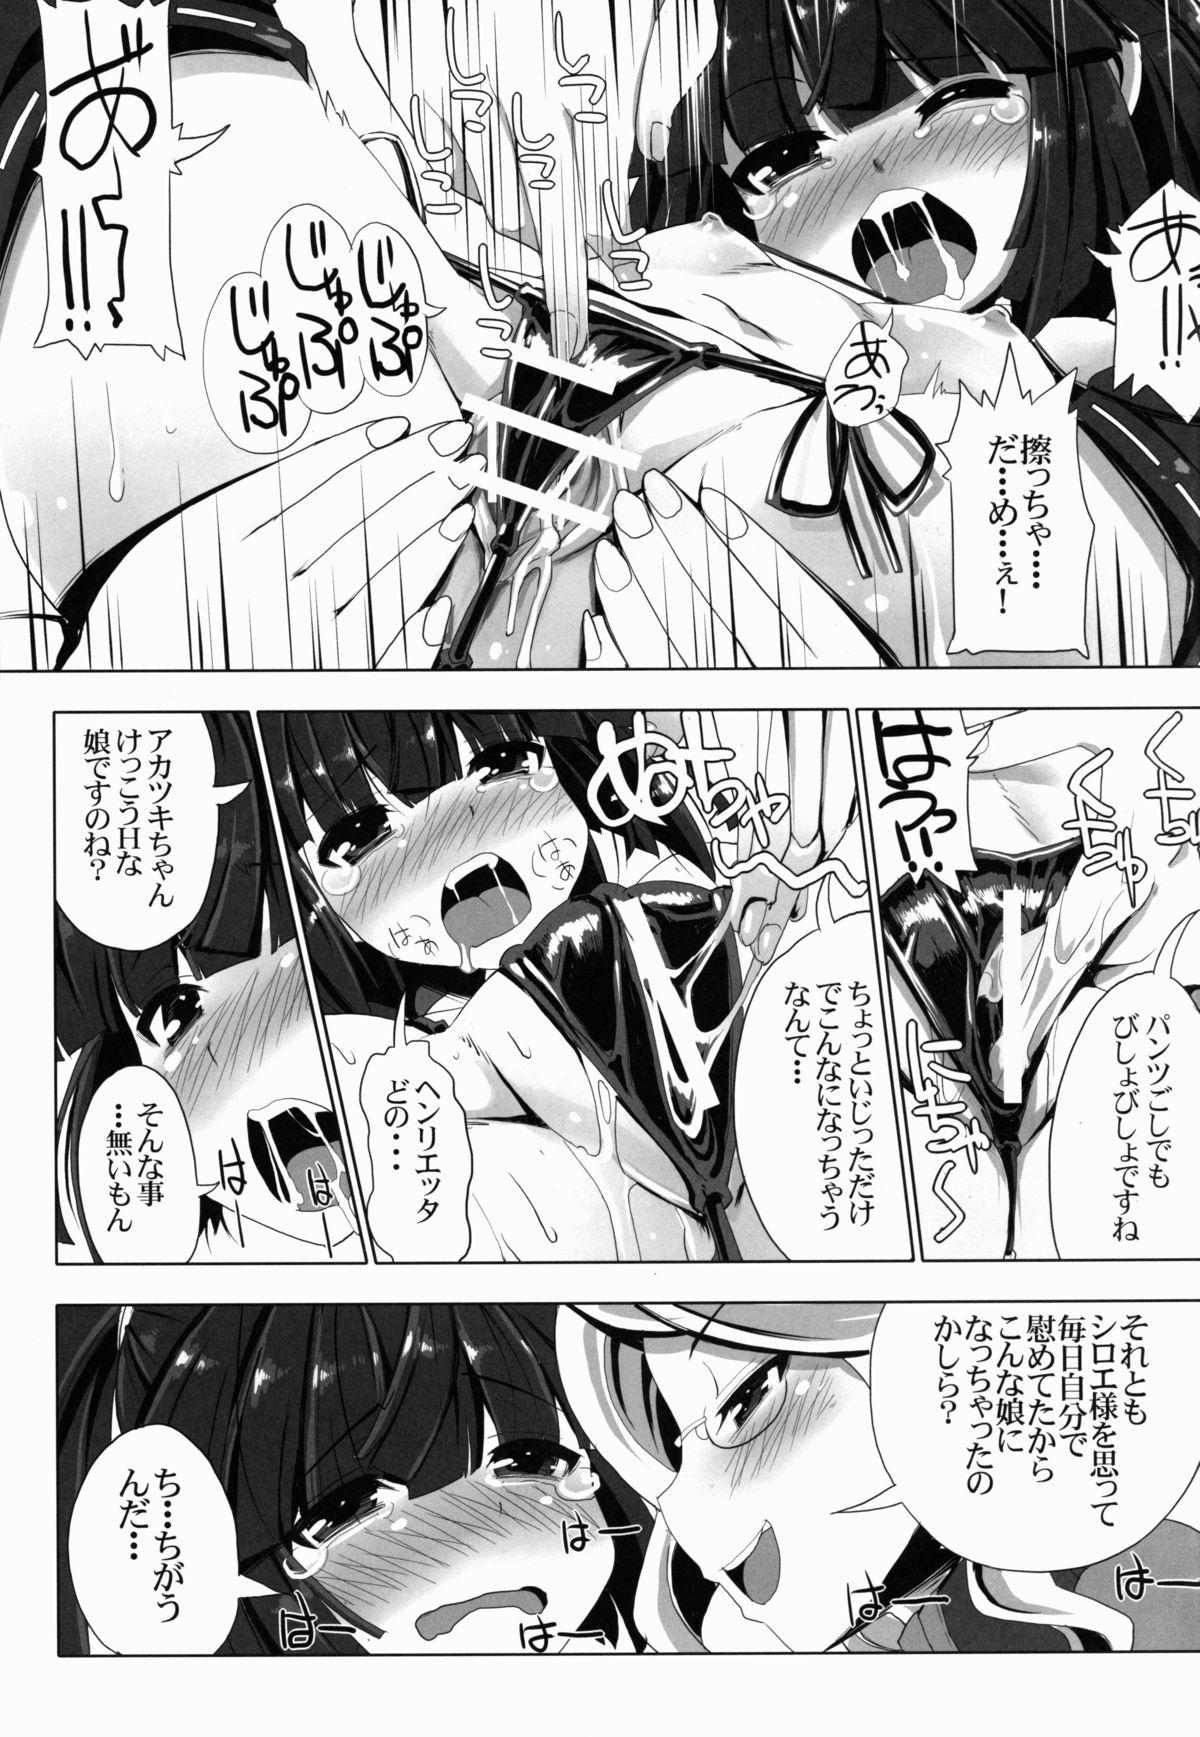 Female Orgasm MMO ni Okeru Rare Soubitte Ero Soubi no Koto da yo ne! - Log horizon Trimmed - Page 9